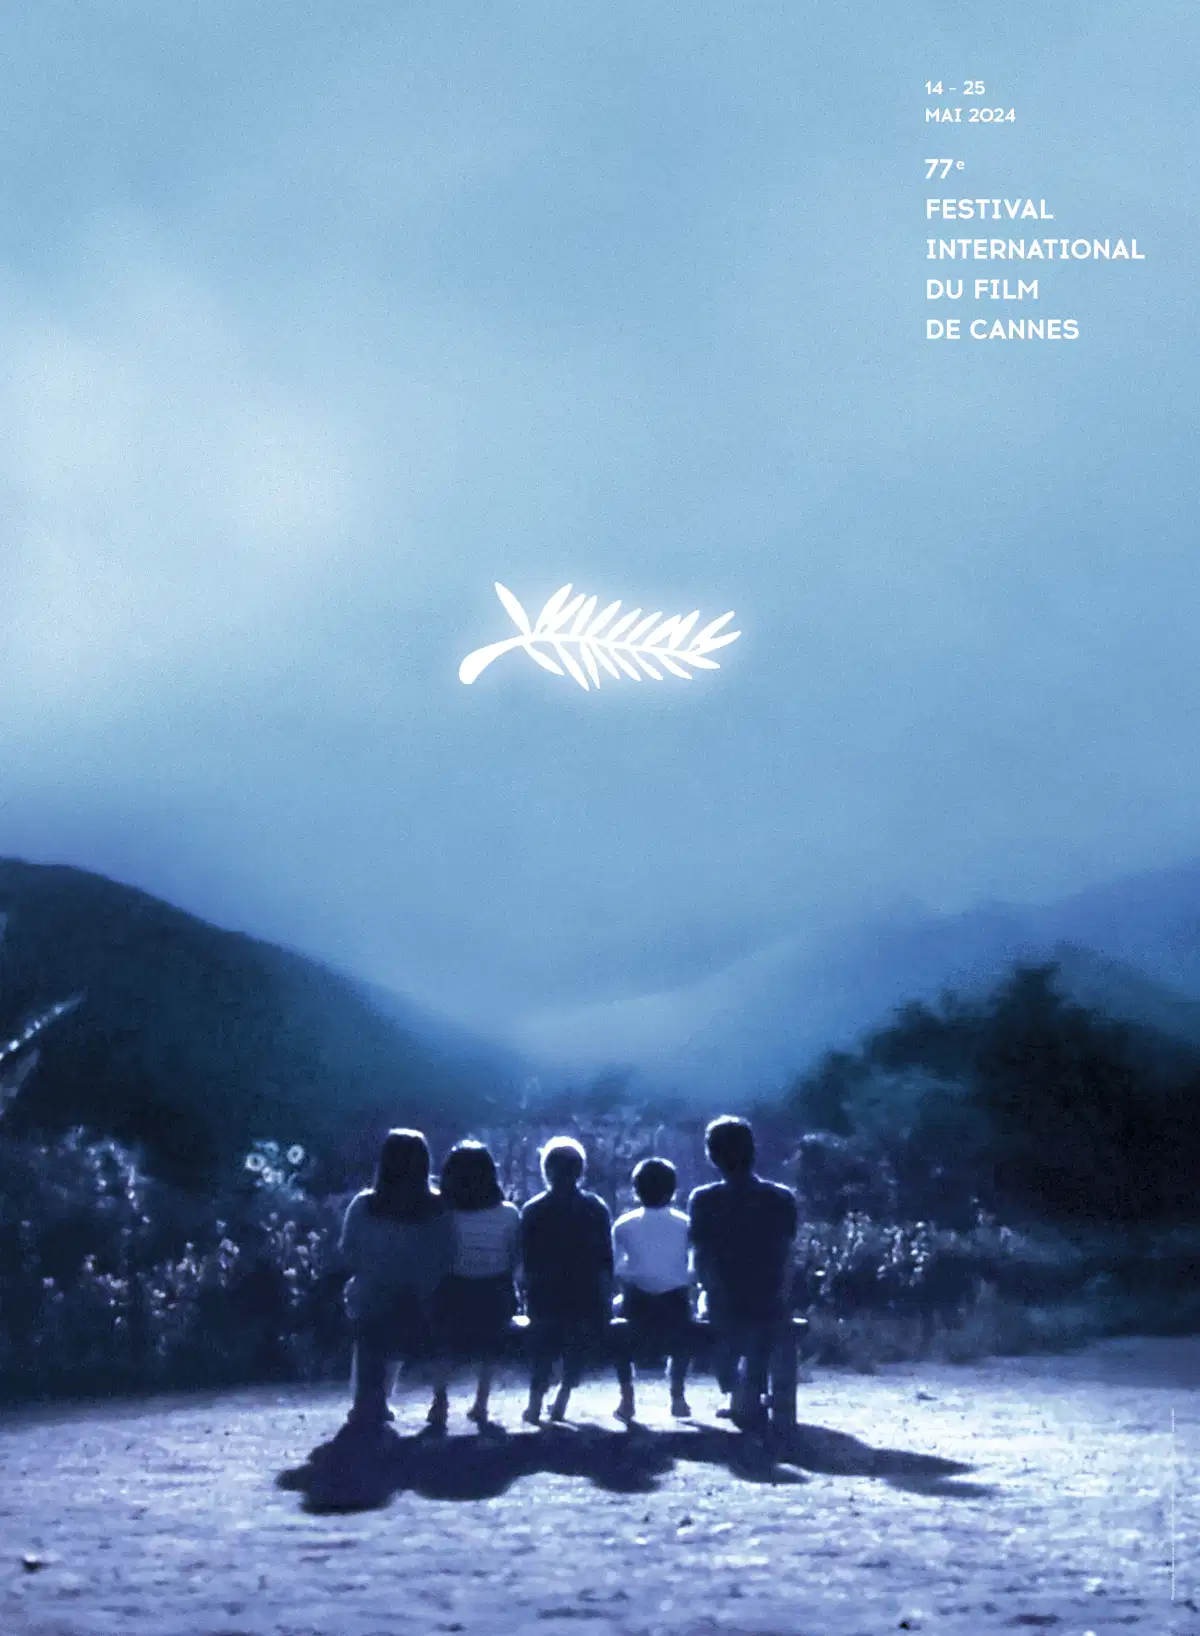 Festival de Cannes : l'affiche de la 77e édition en hommage à Akira Kurosawa